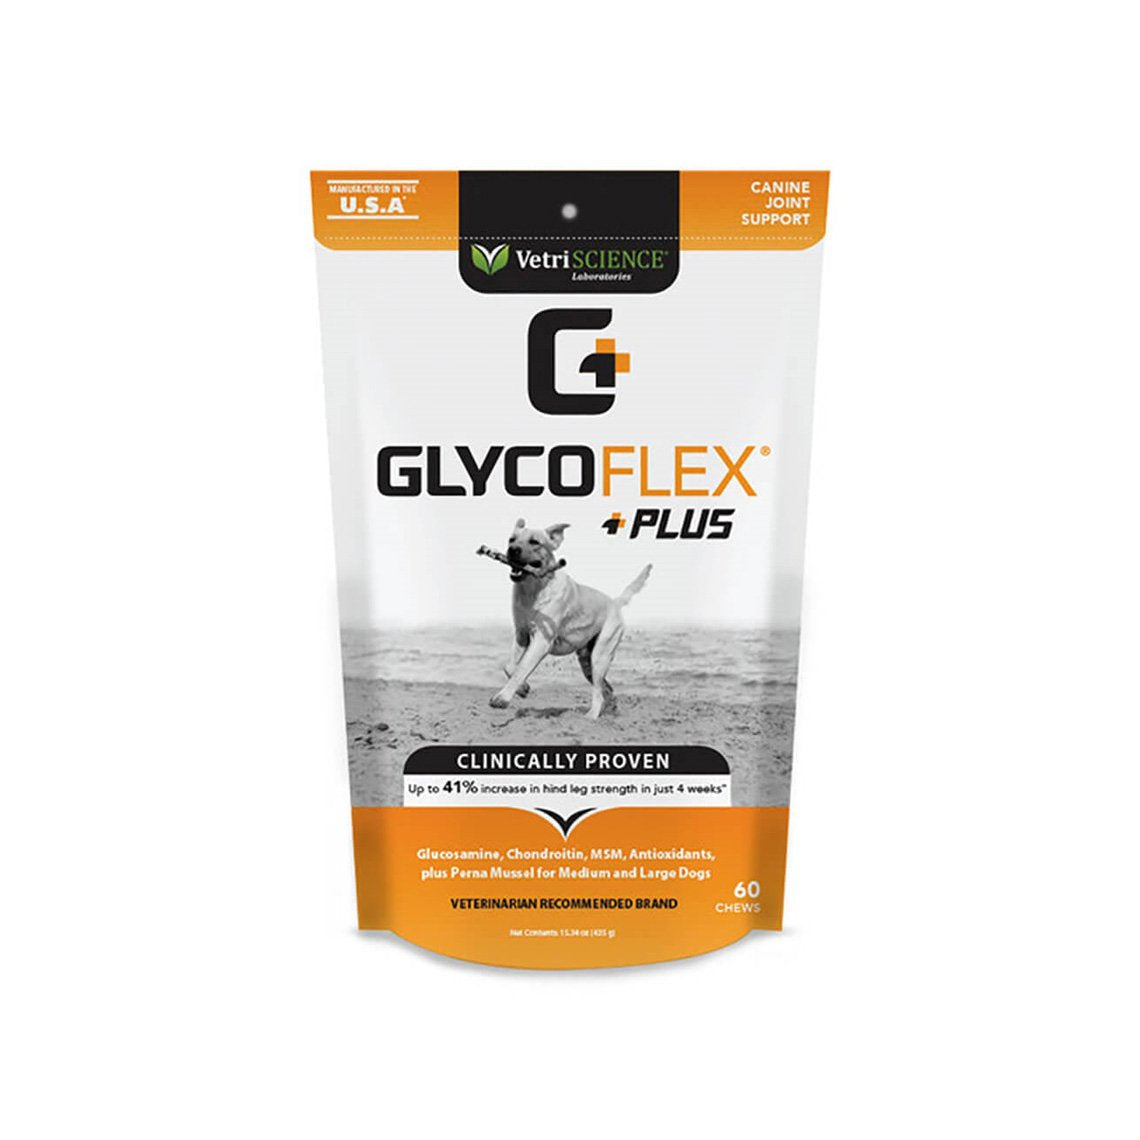 glycoflex plus 120